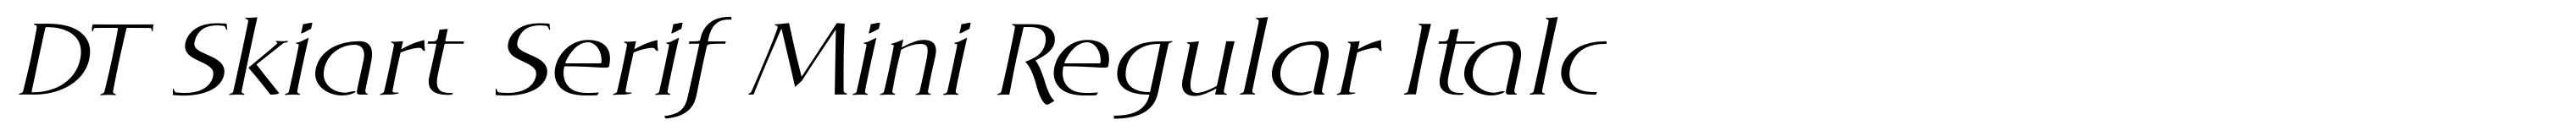 DT Skiart Serif Mini Regular Italc